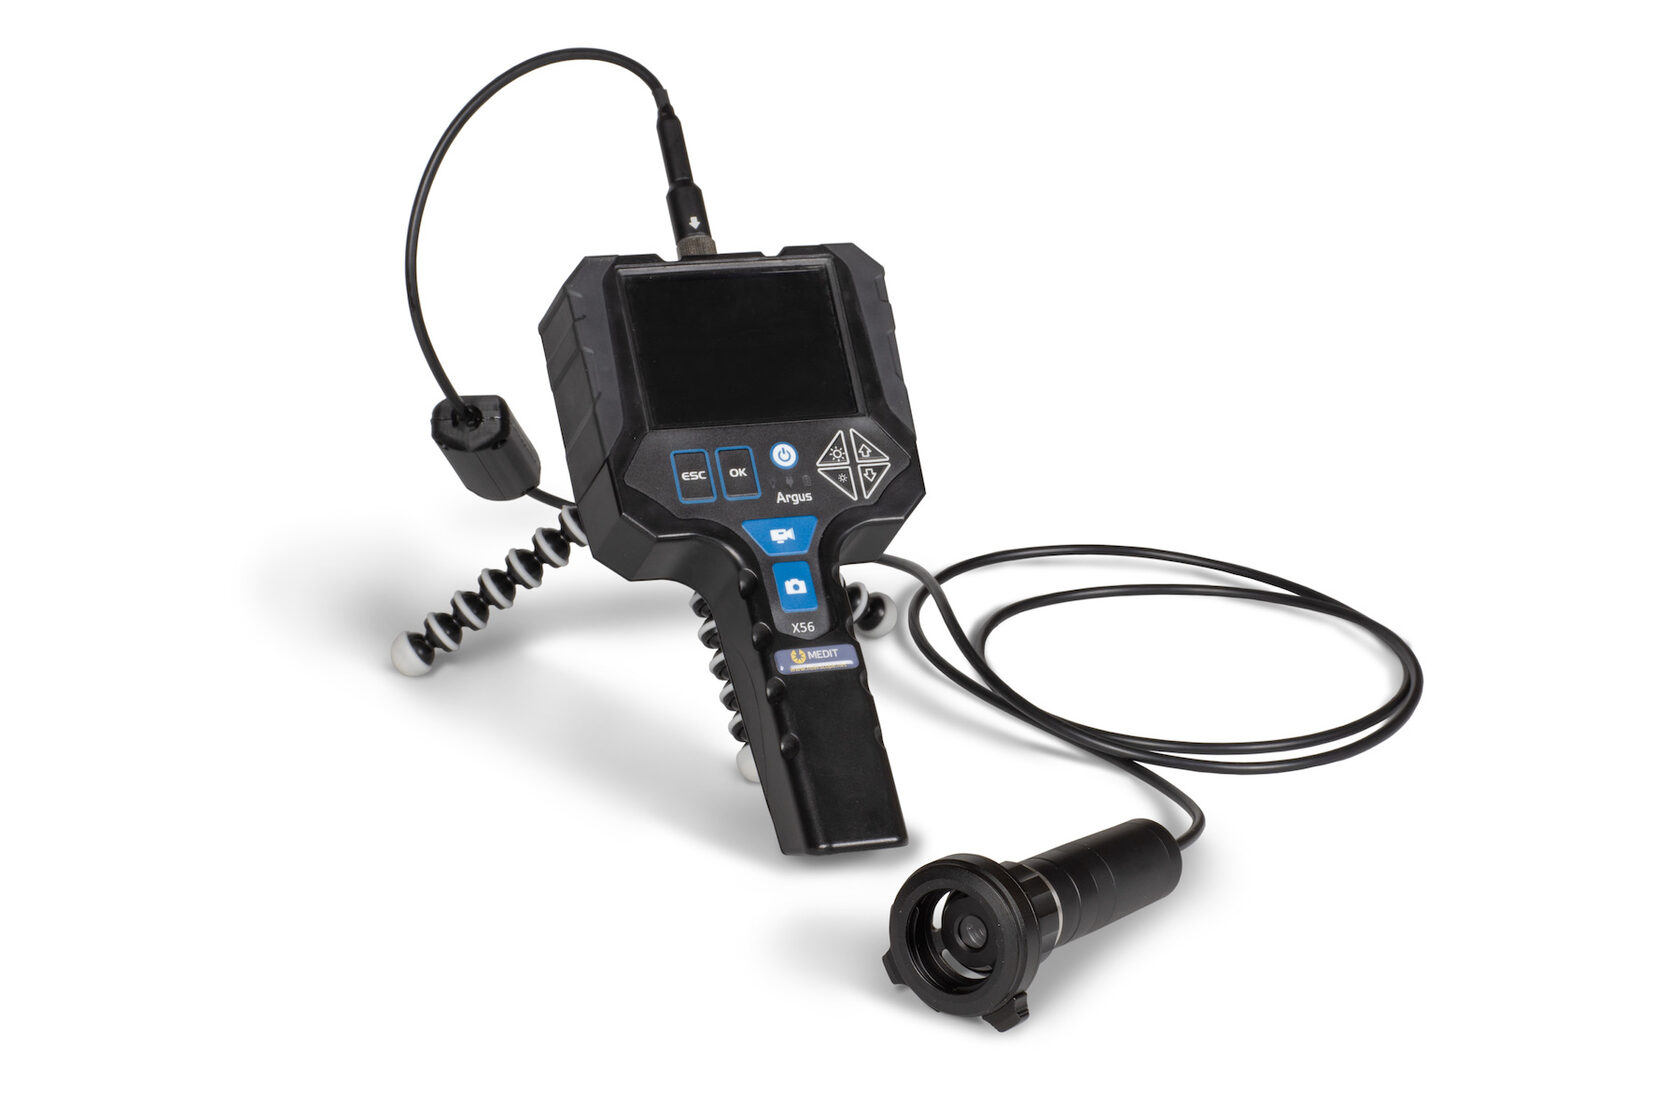 ED-Cam - Medical Endoscopes - Portable Endoscopy Camera